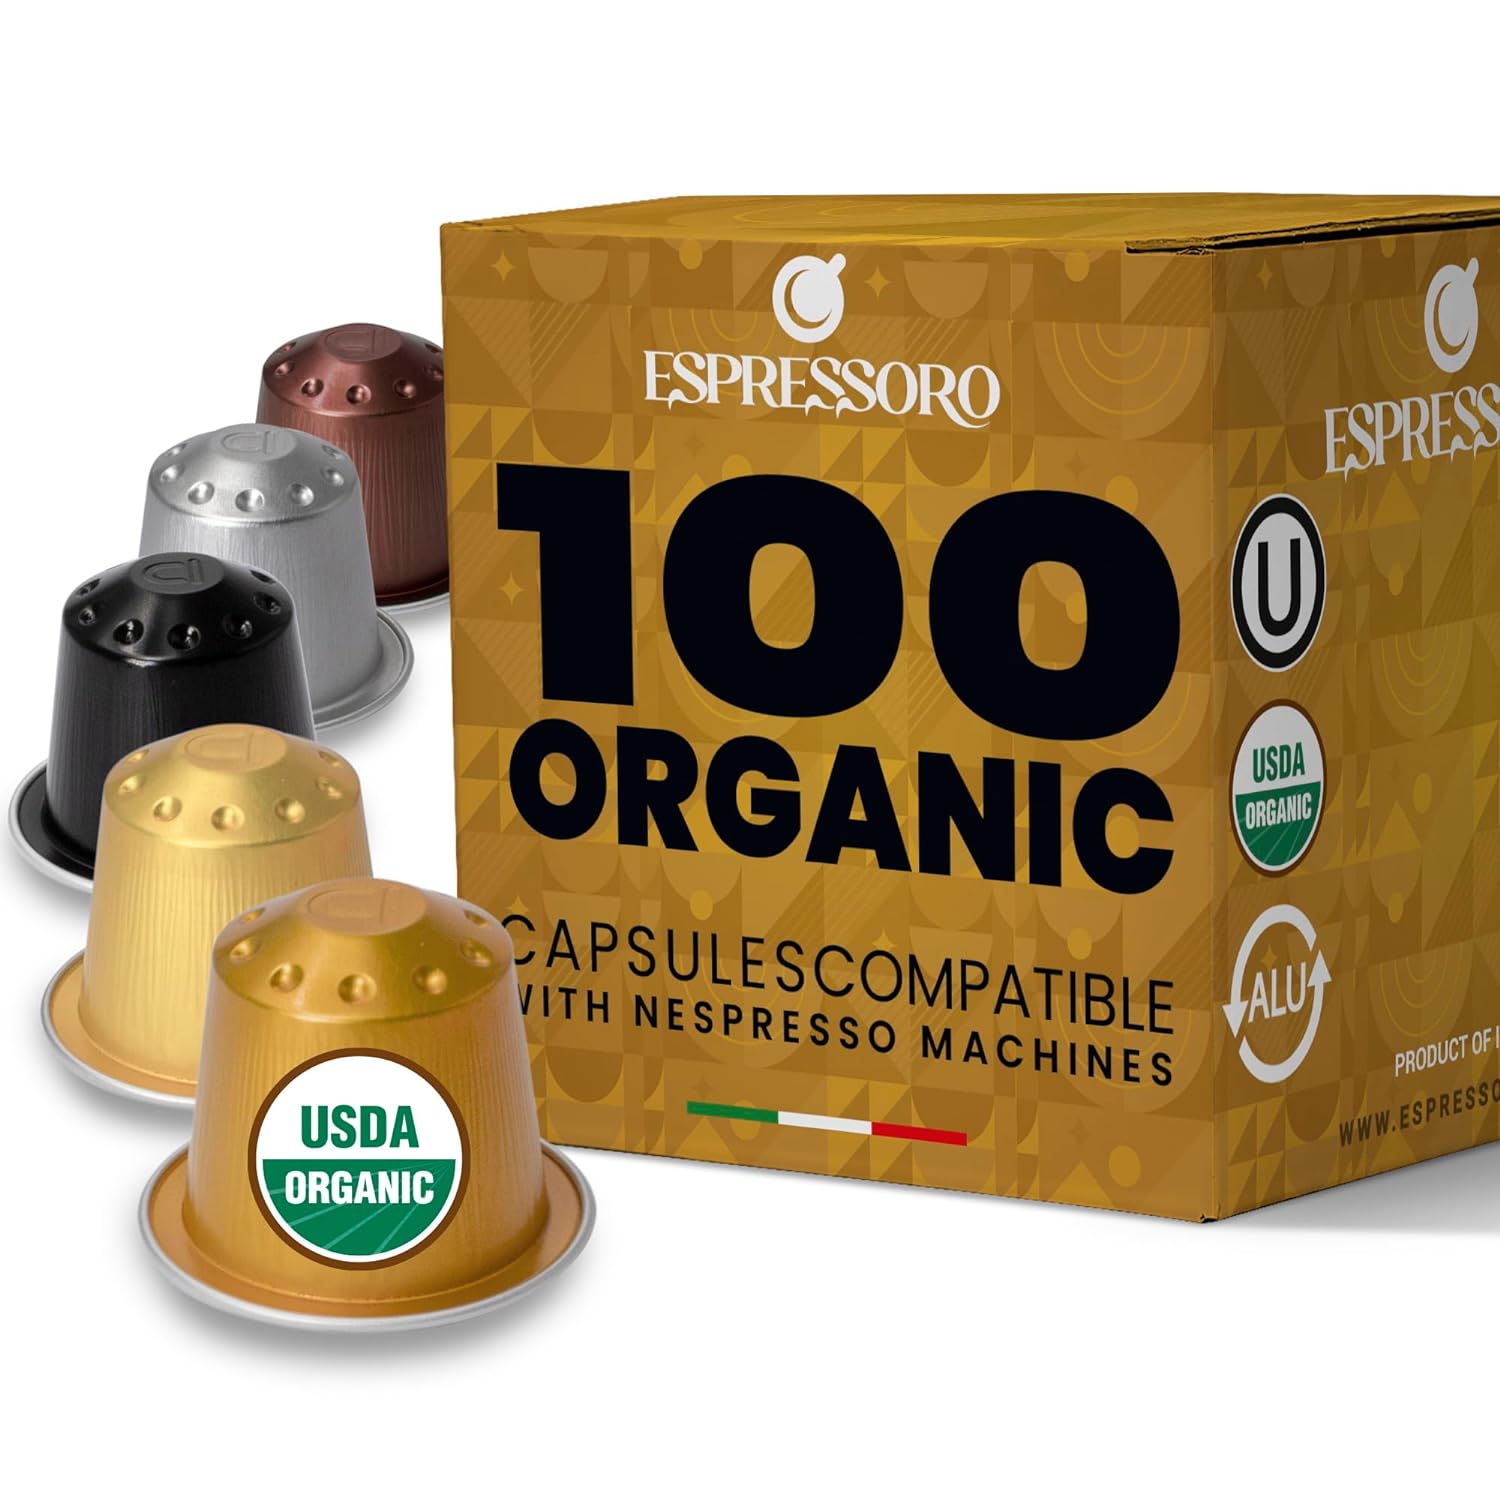 ESPRESSORO 100 USDA Organic Espresso Pods - VARIETY PACK Aluminum Capsule Compatible with Nespresso Original Lines Machines. Assorted Premium Italian Expresso Coffee Capsules